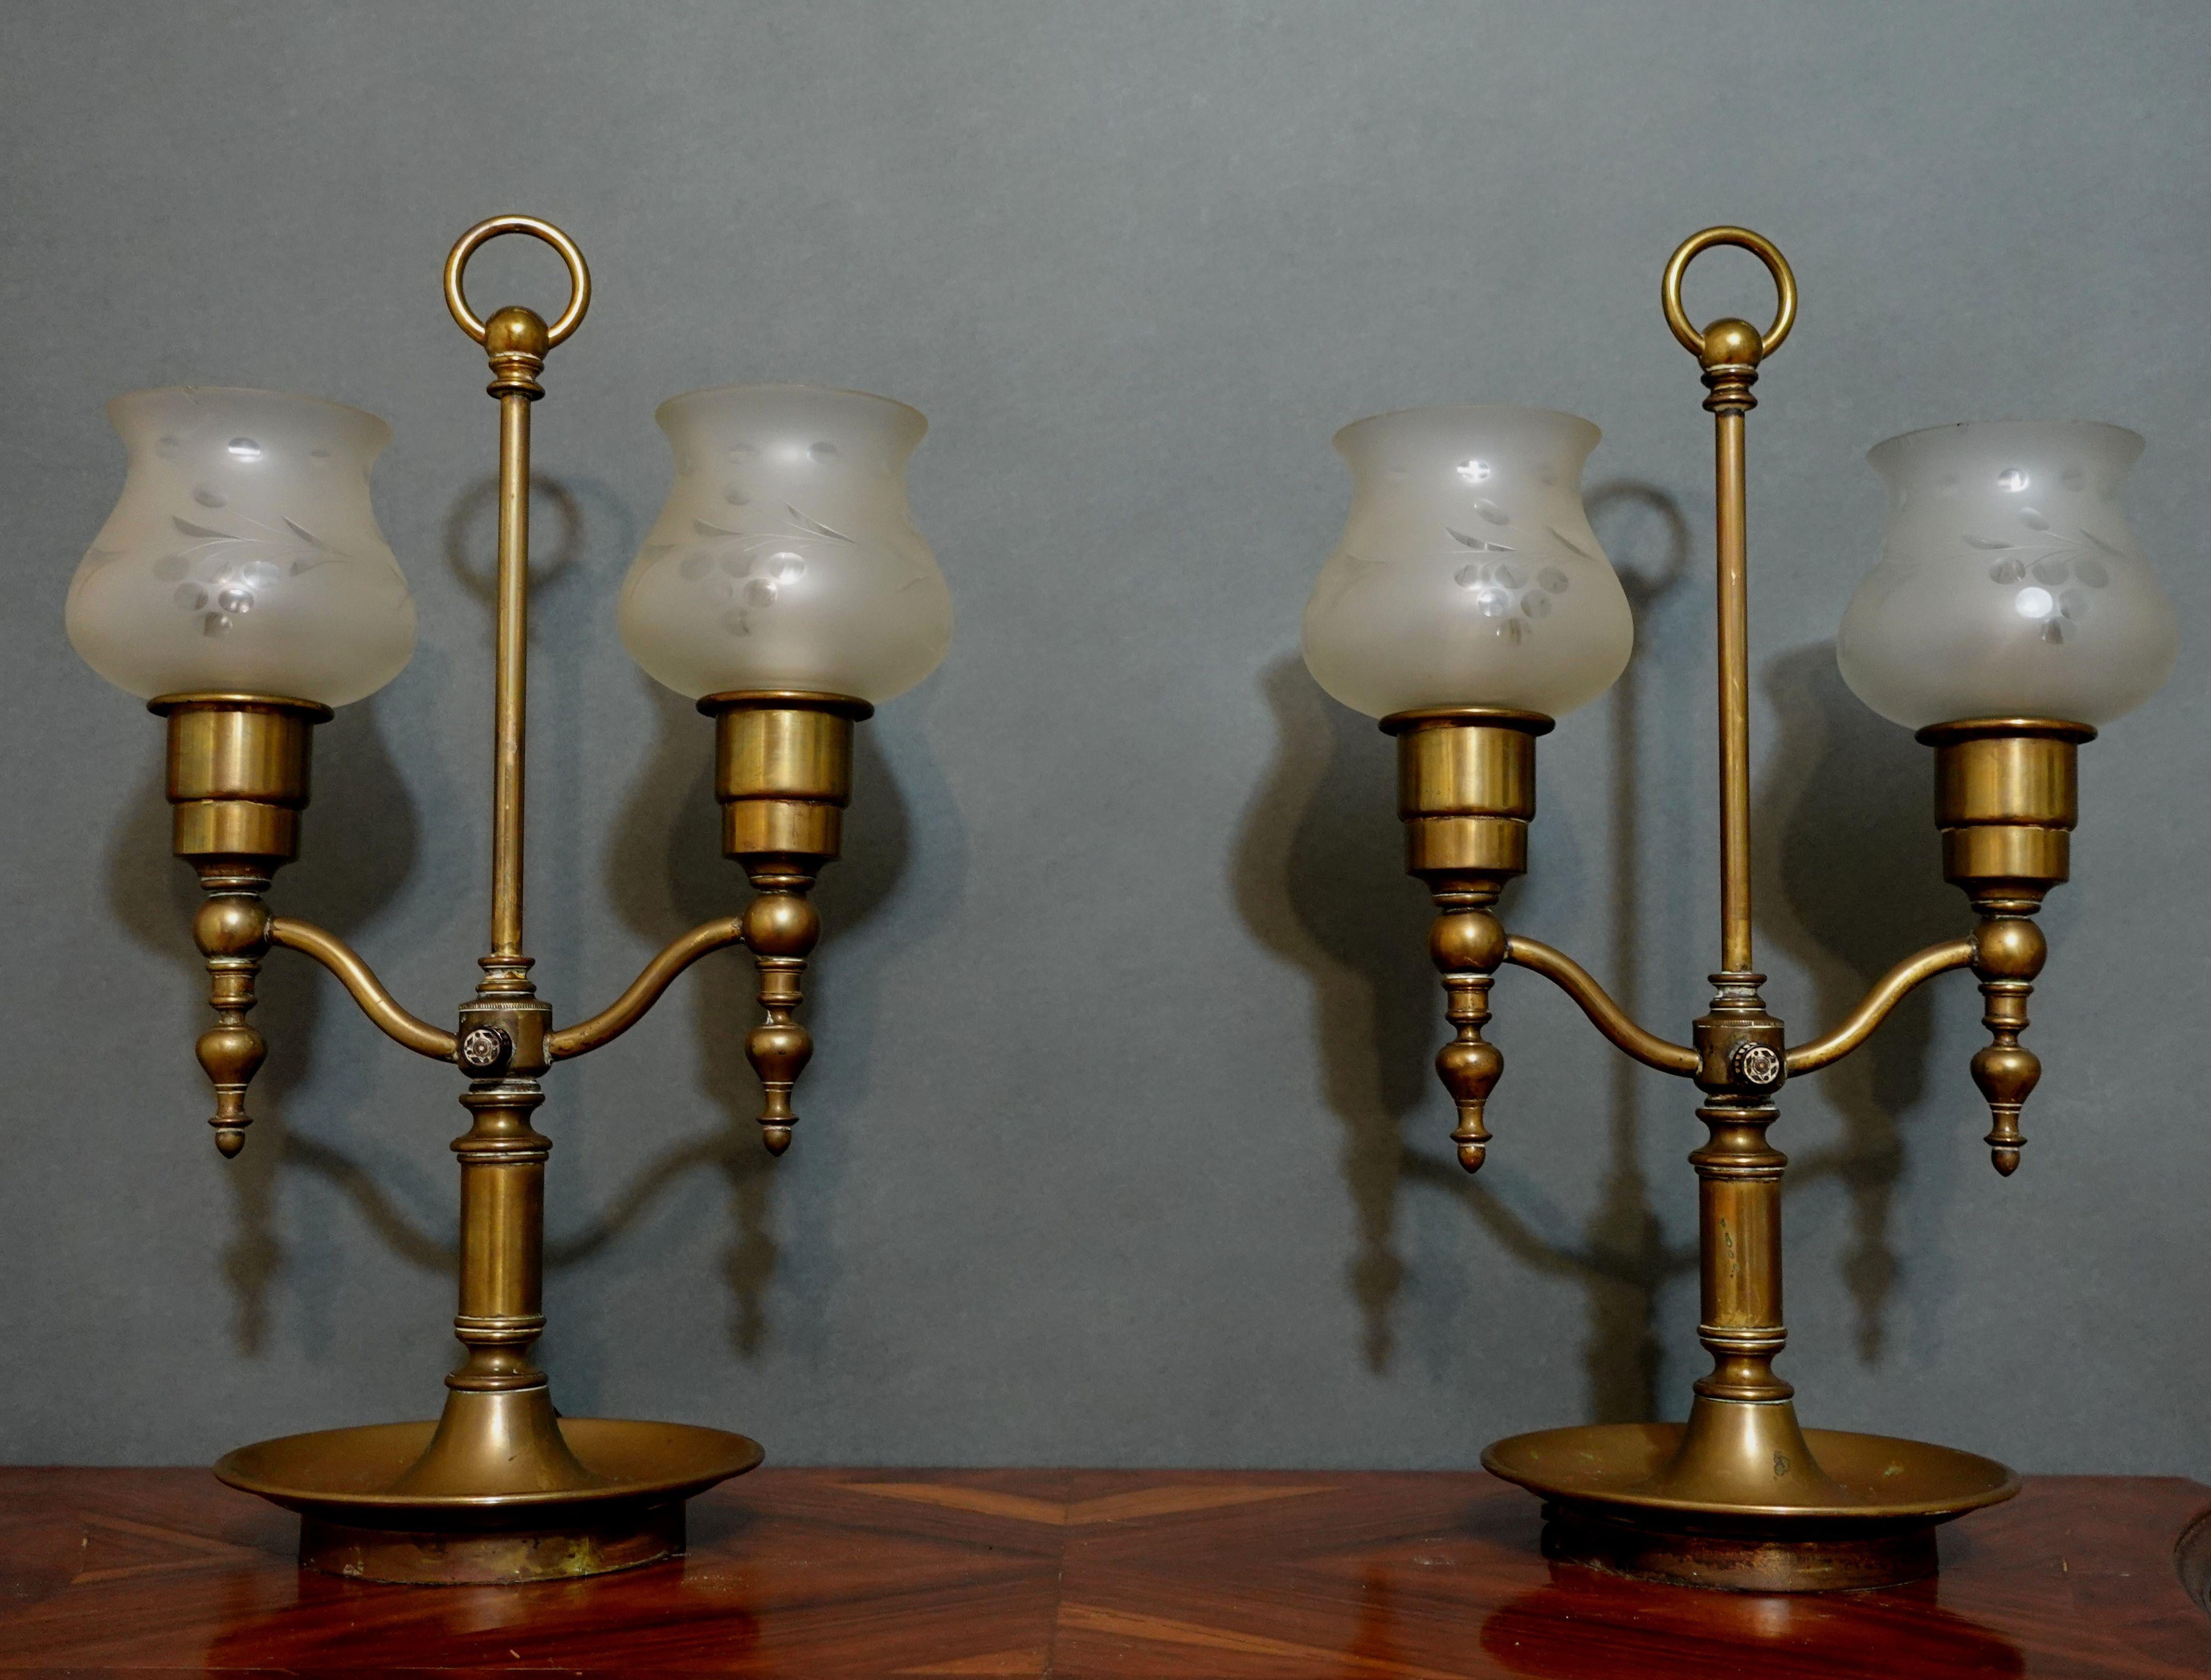 Verkaufen Sie das schöne antike Paar großer zweiarmiger Messing-Wirbelsturmlampen aus dem späten 19. bis frühen 20. Jahrhundert. Die Lampen kommen mit 2 geschliffenem Glas mit Blumenmustern in Form von Kreisformen sehr elegant, schöne